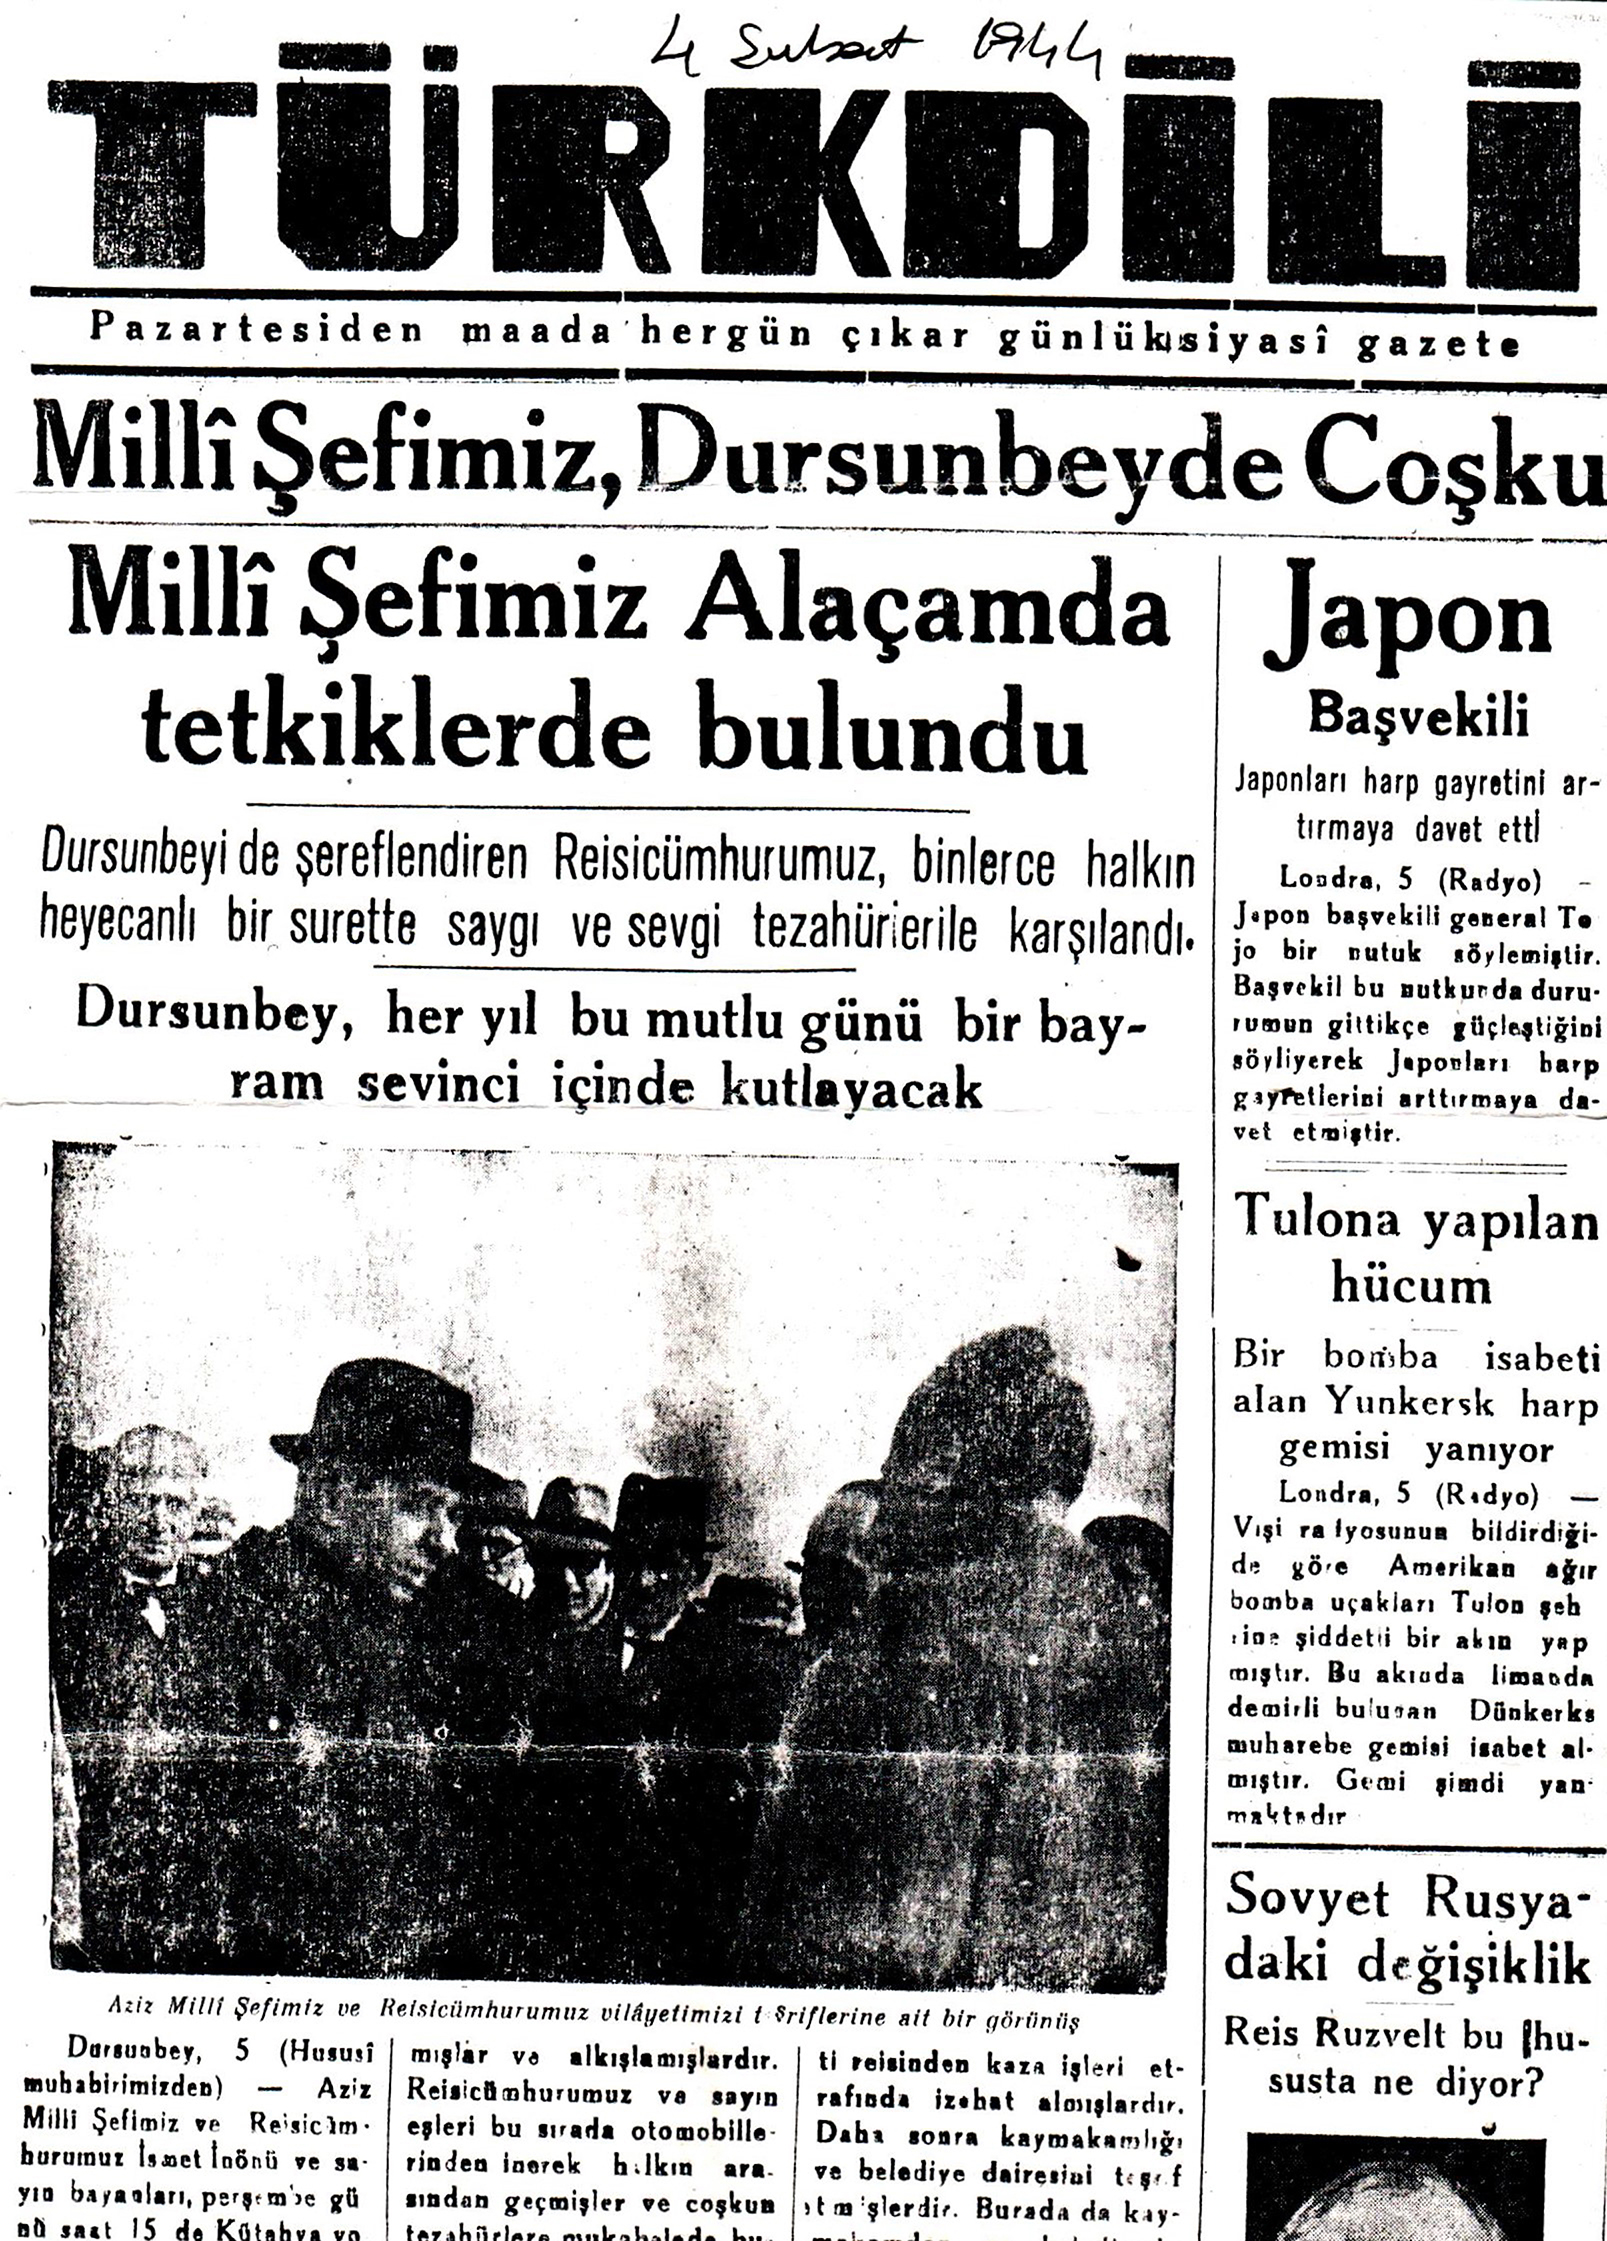 Dursunbey’in 2. Dünya Savaşındaki Tarihi Önemi 4 şubat 1944’de Reisicumhur İsmet İnönü’nün Dursunbey’i ziyareti